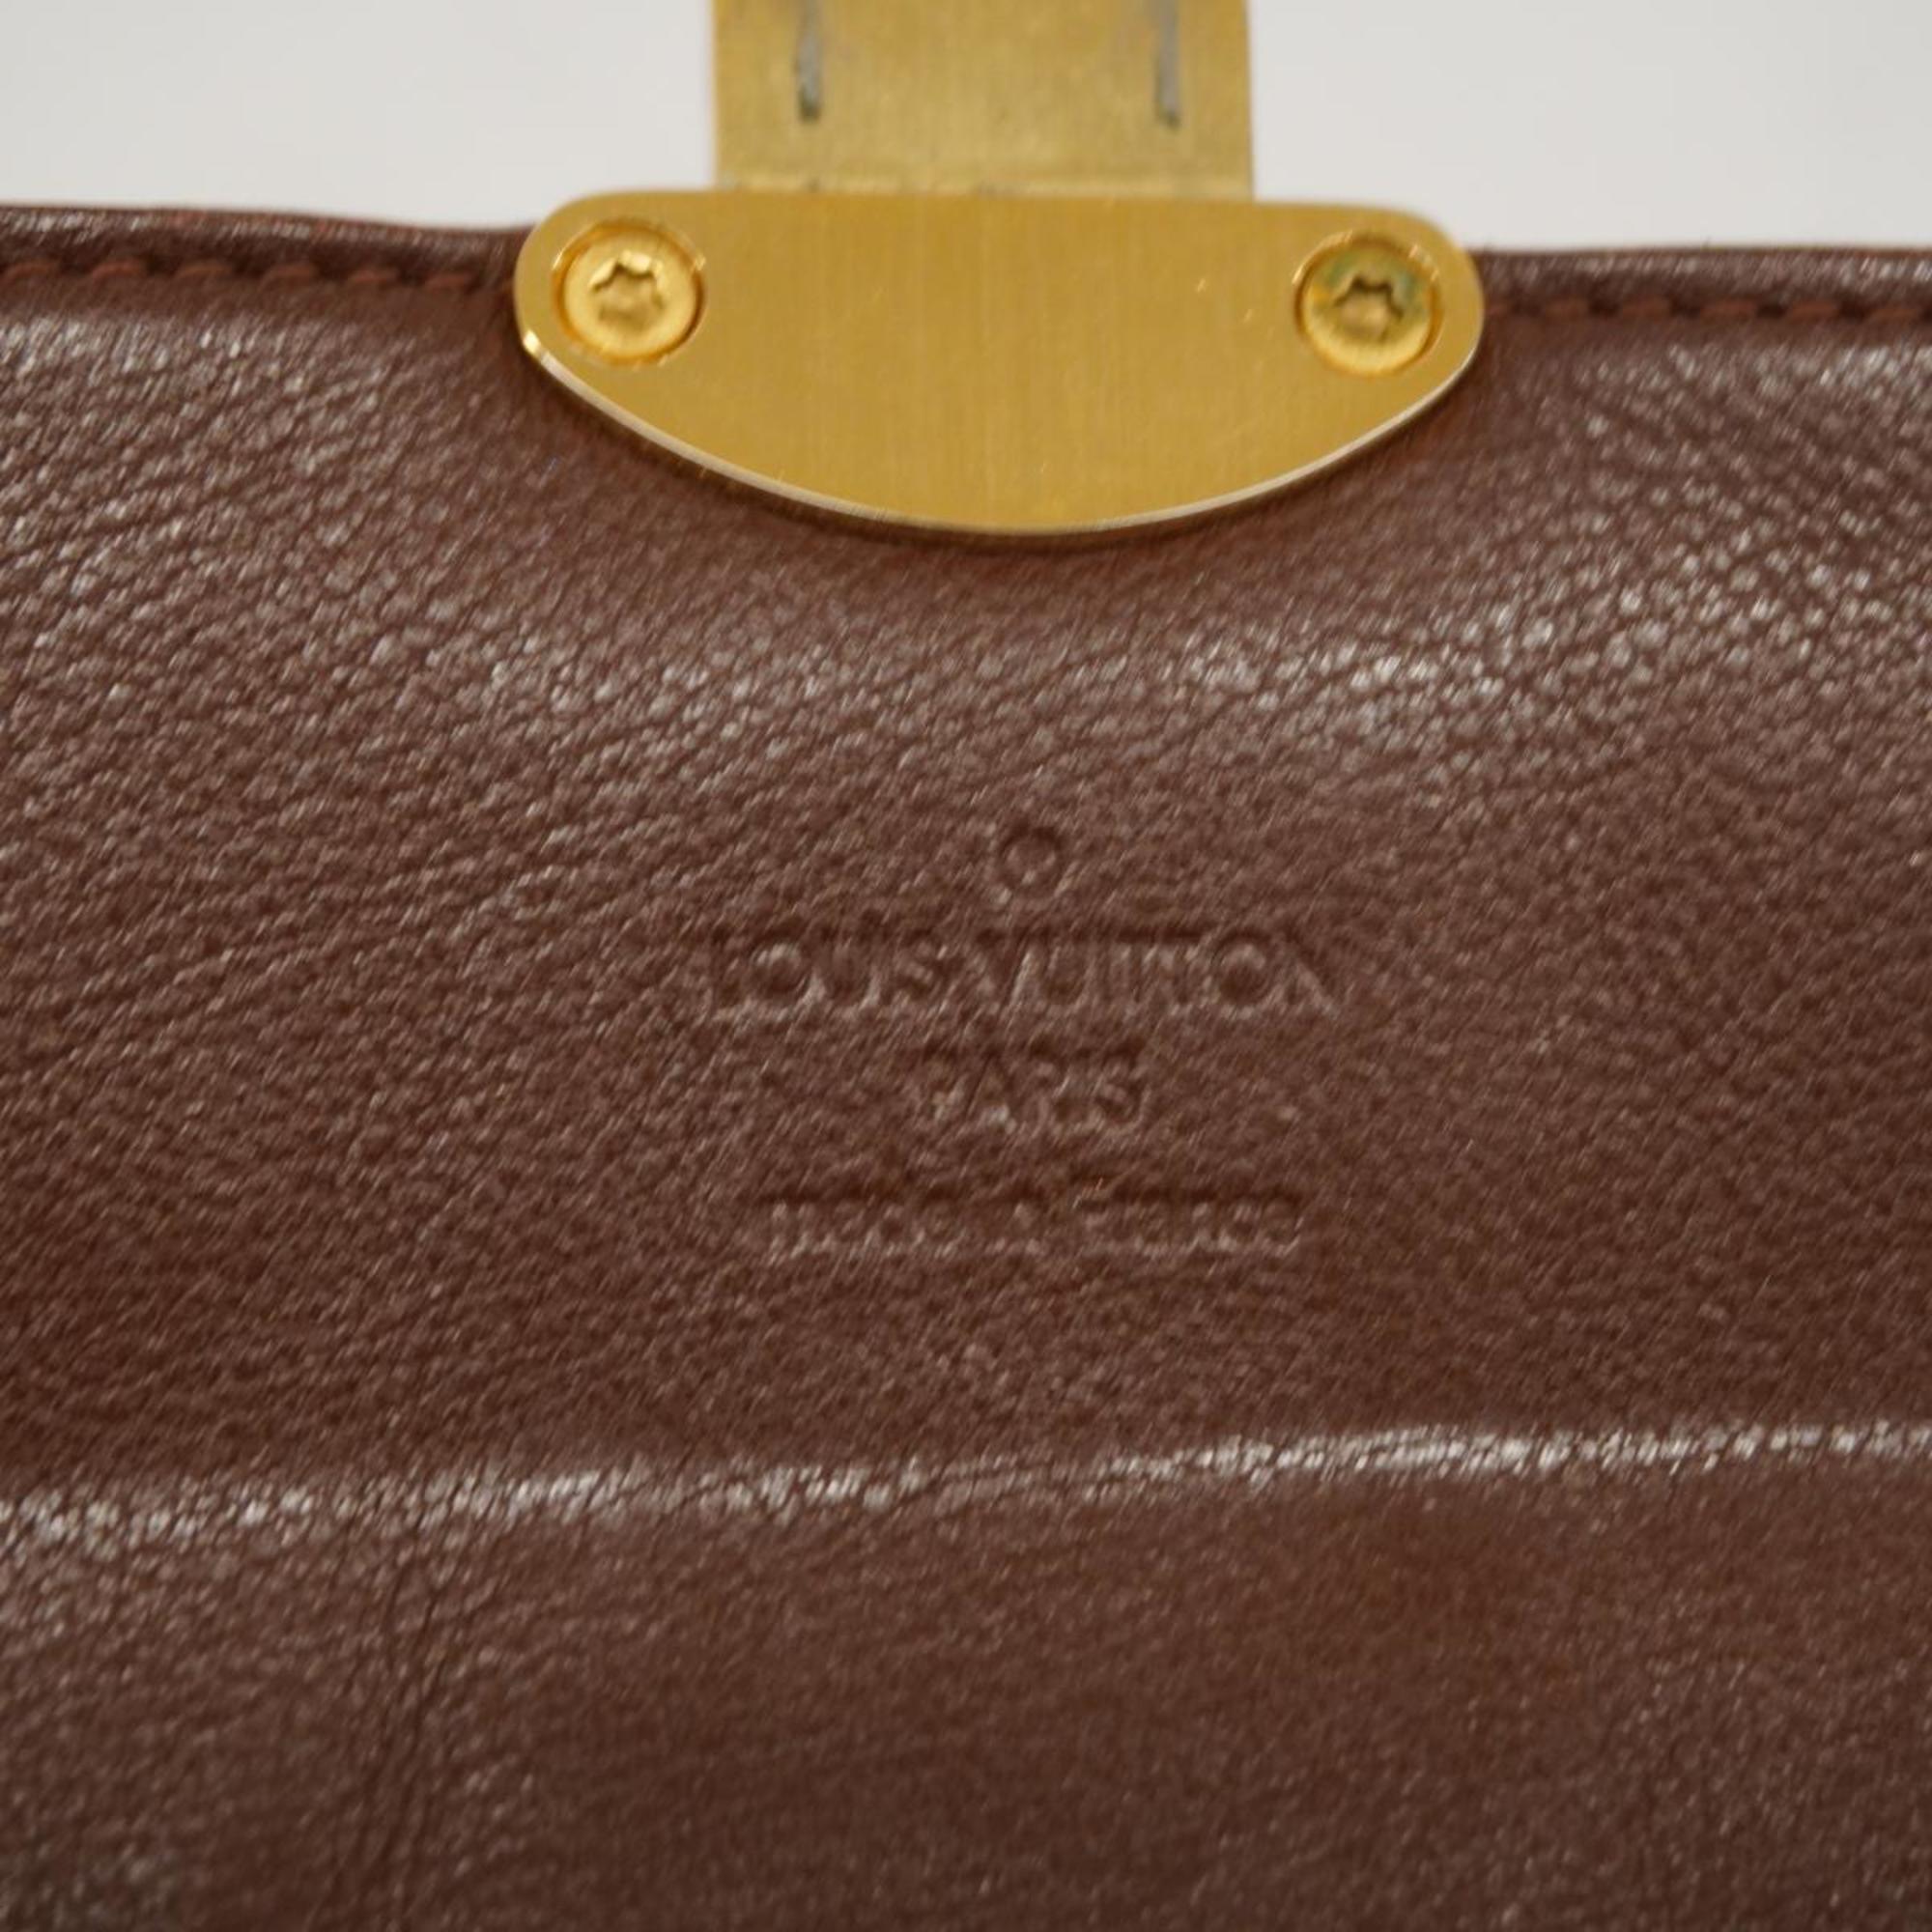 ルイ・ヴィトン(Louis Vuitton) ルイ・ヴィトン 長財布 マヒナ クラッチアメリア M58125 アカジューレディース